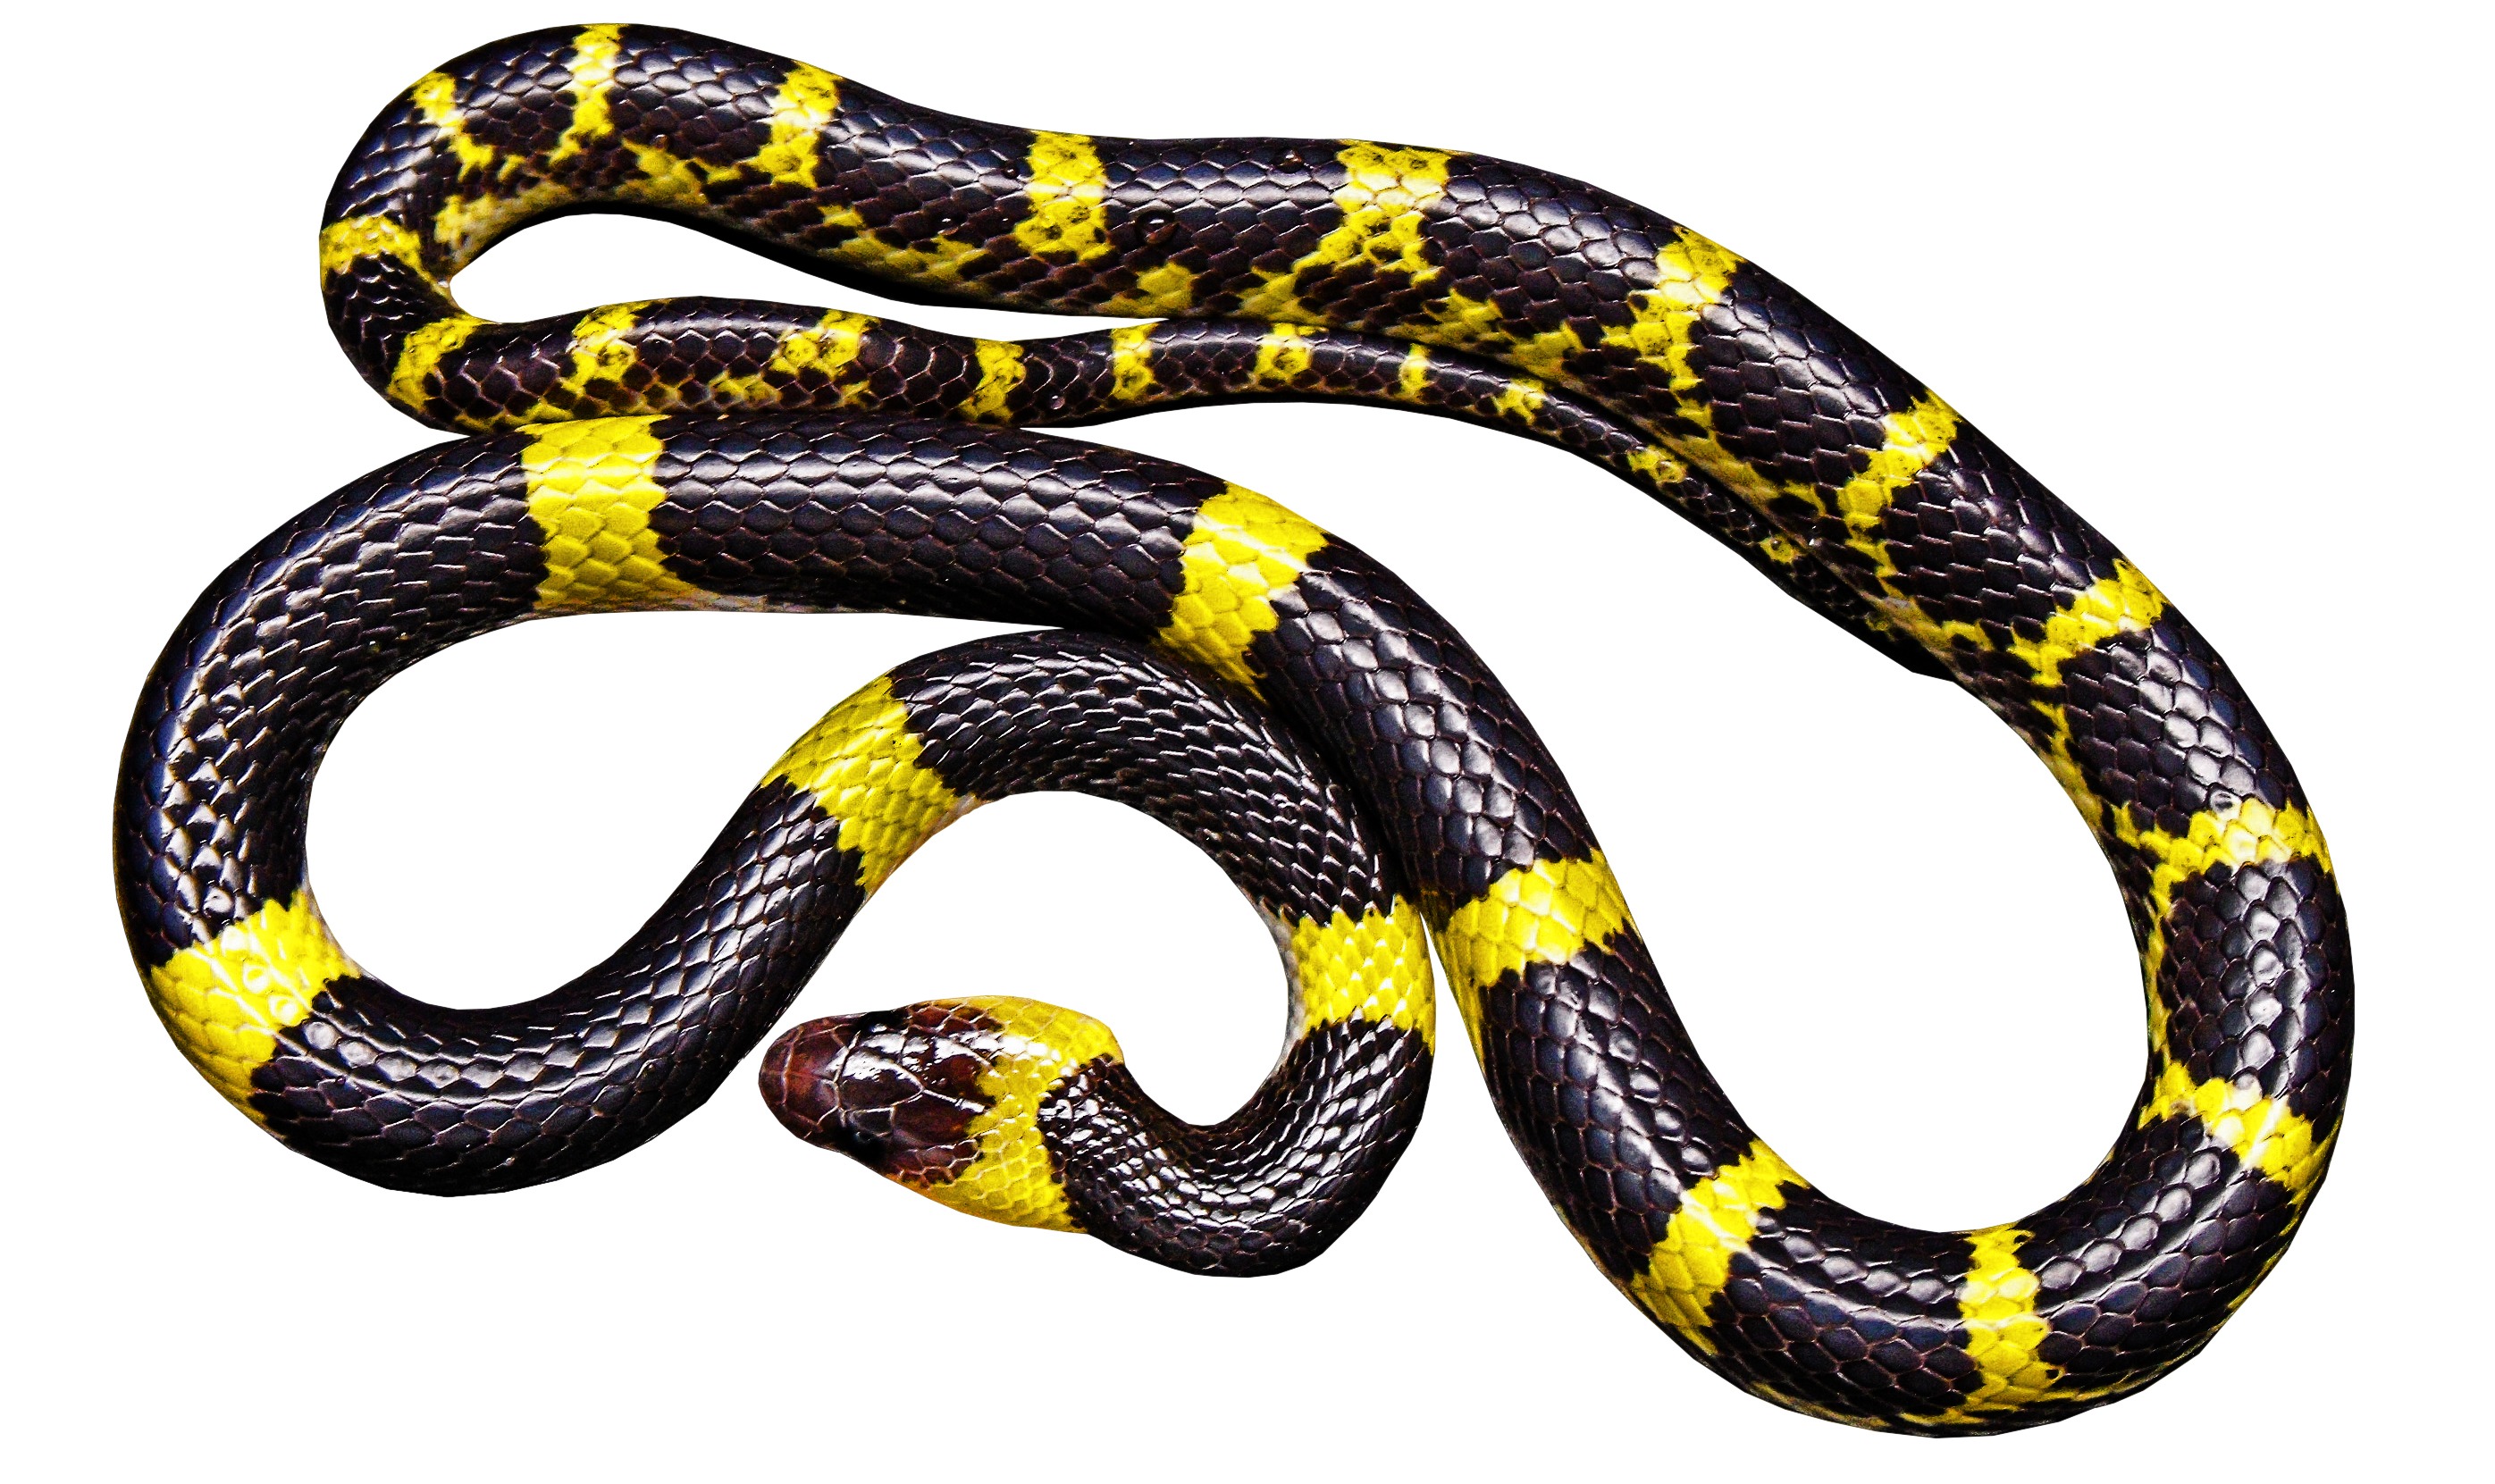 La imagen muestra una serpiente larga, negra con rayas amarillas